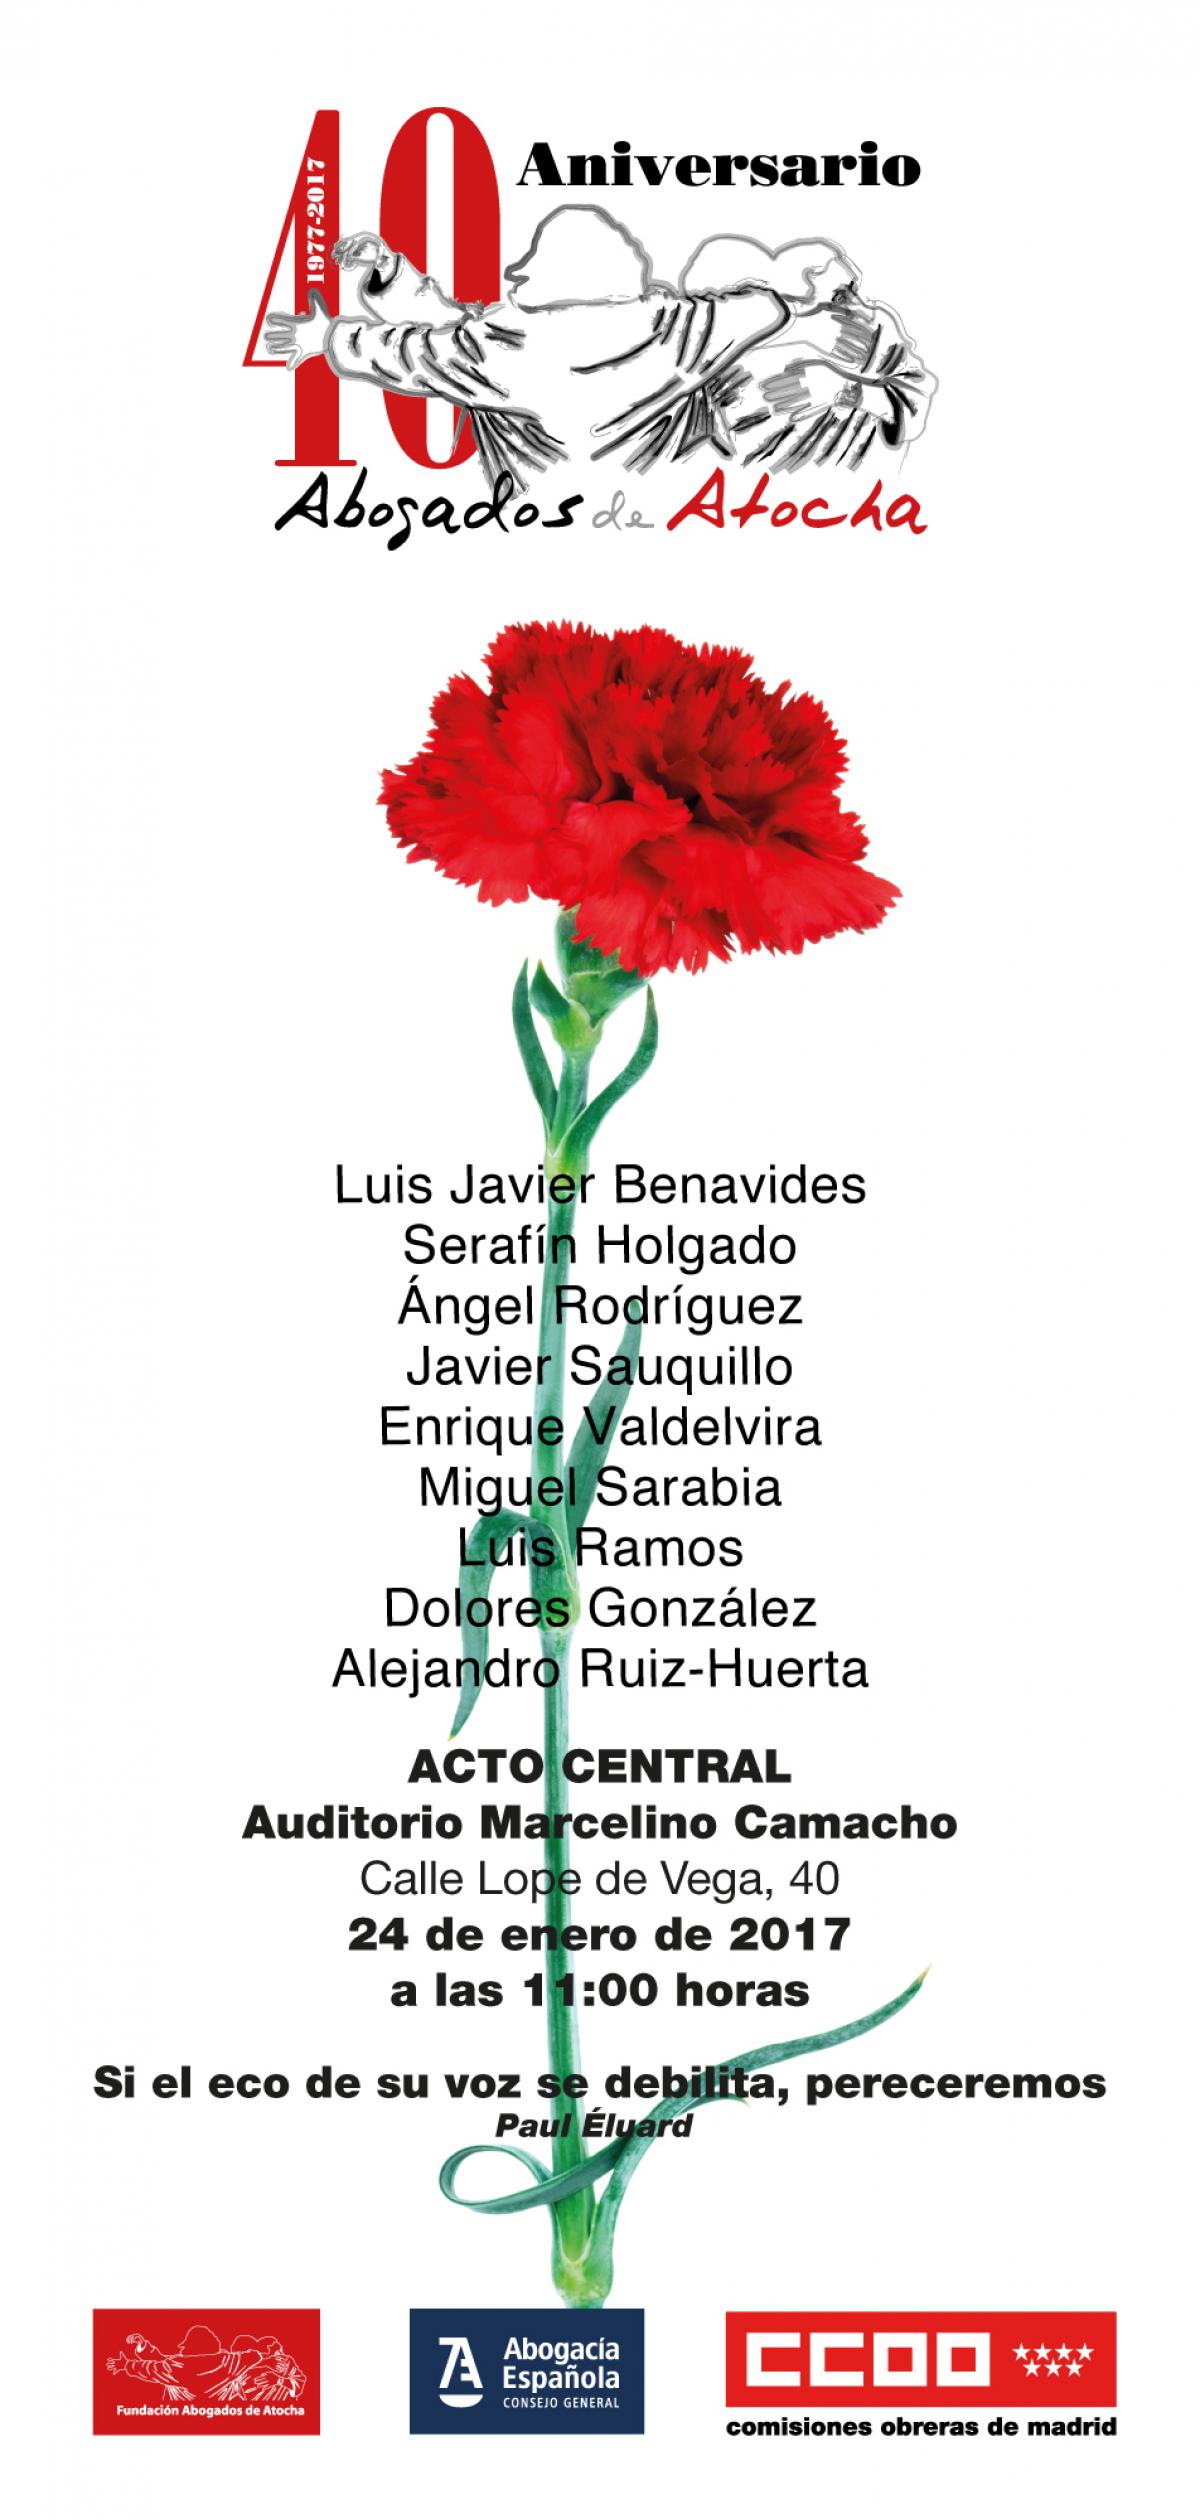 20170124 40 aniversario Abogados Atocha